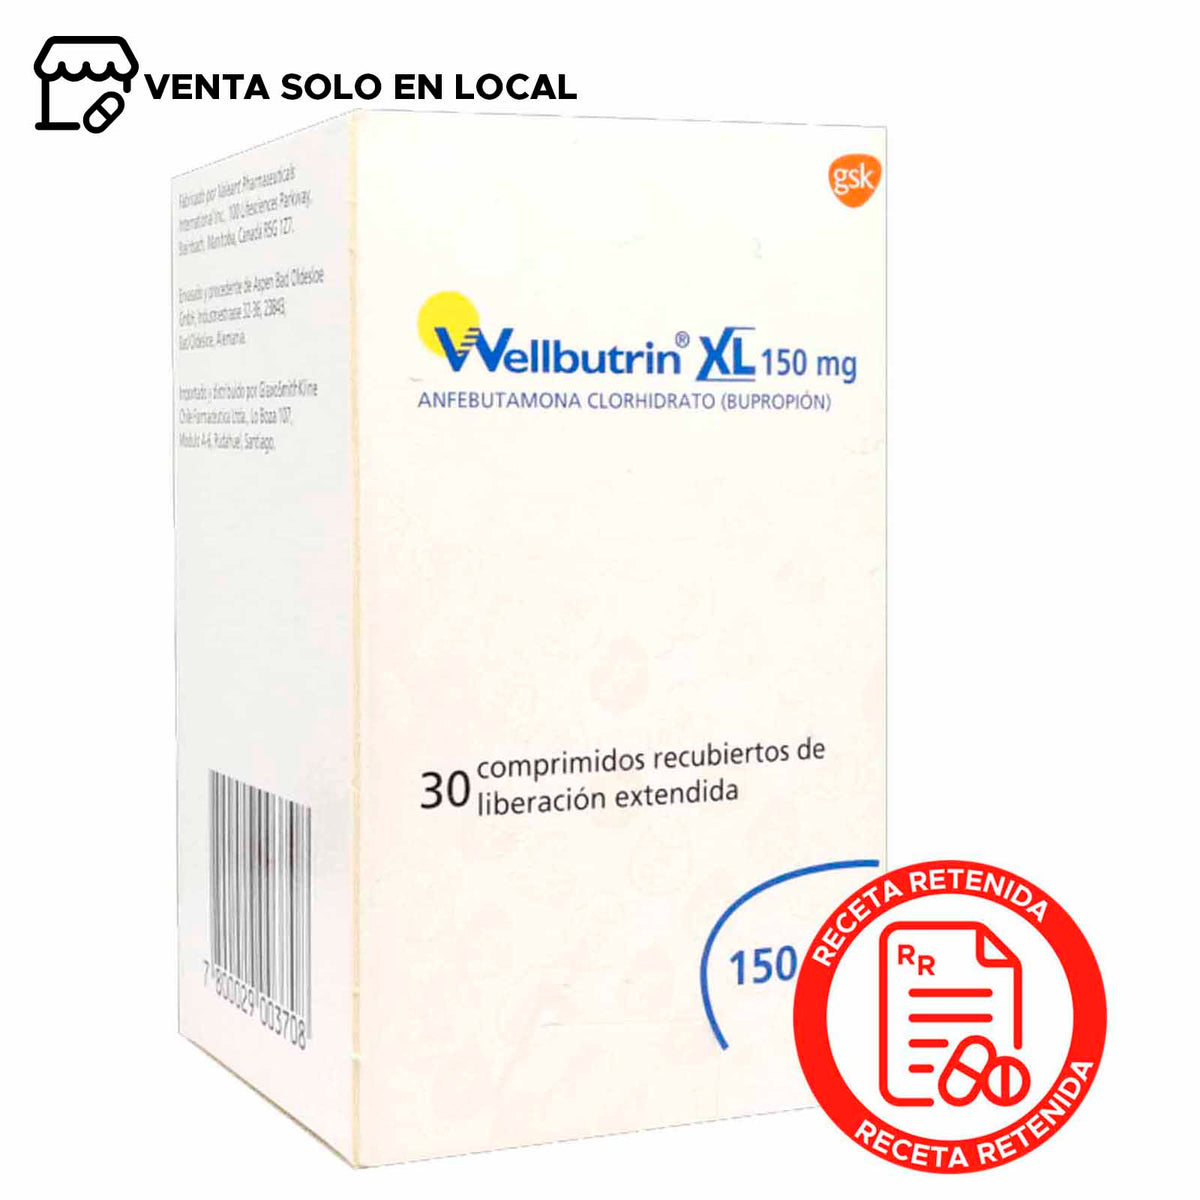 Wellbutrin XL Comprimidos Recubiertos de Liberación Extendida 150mg